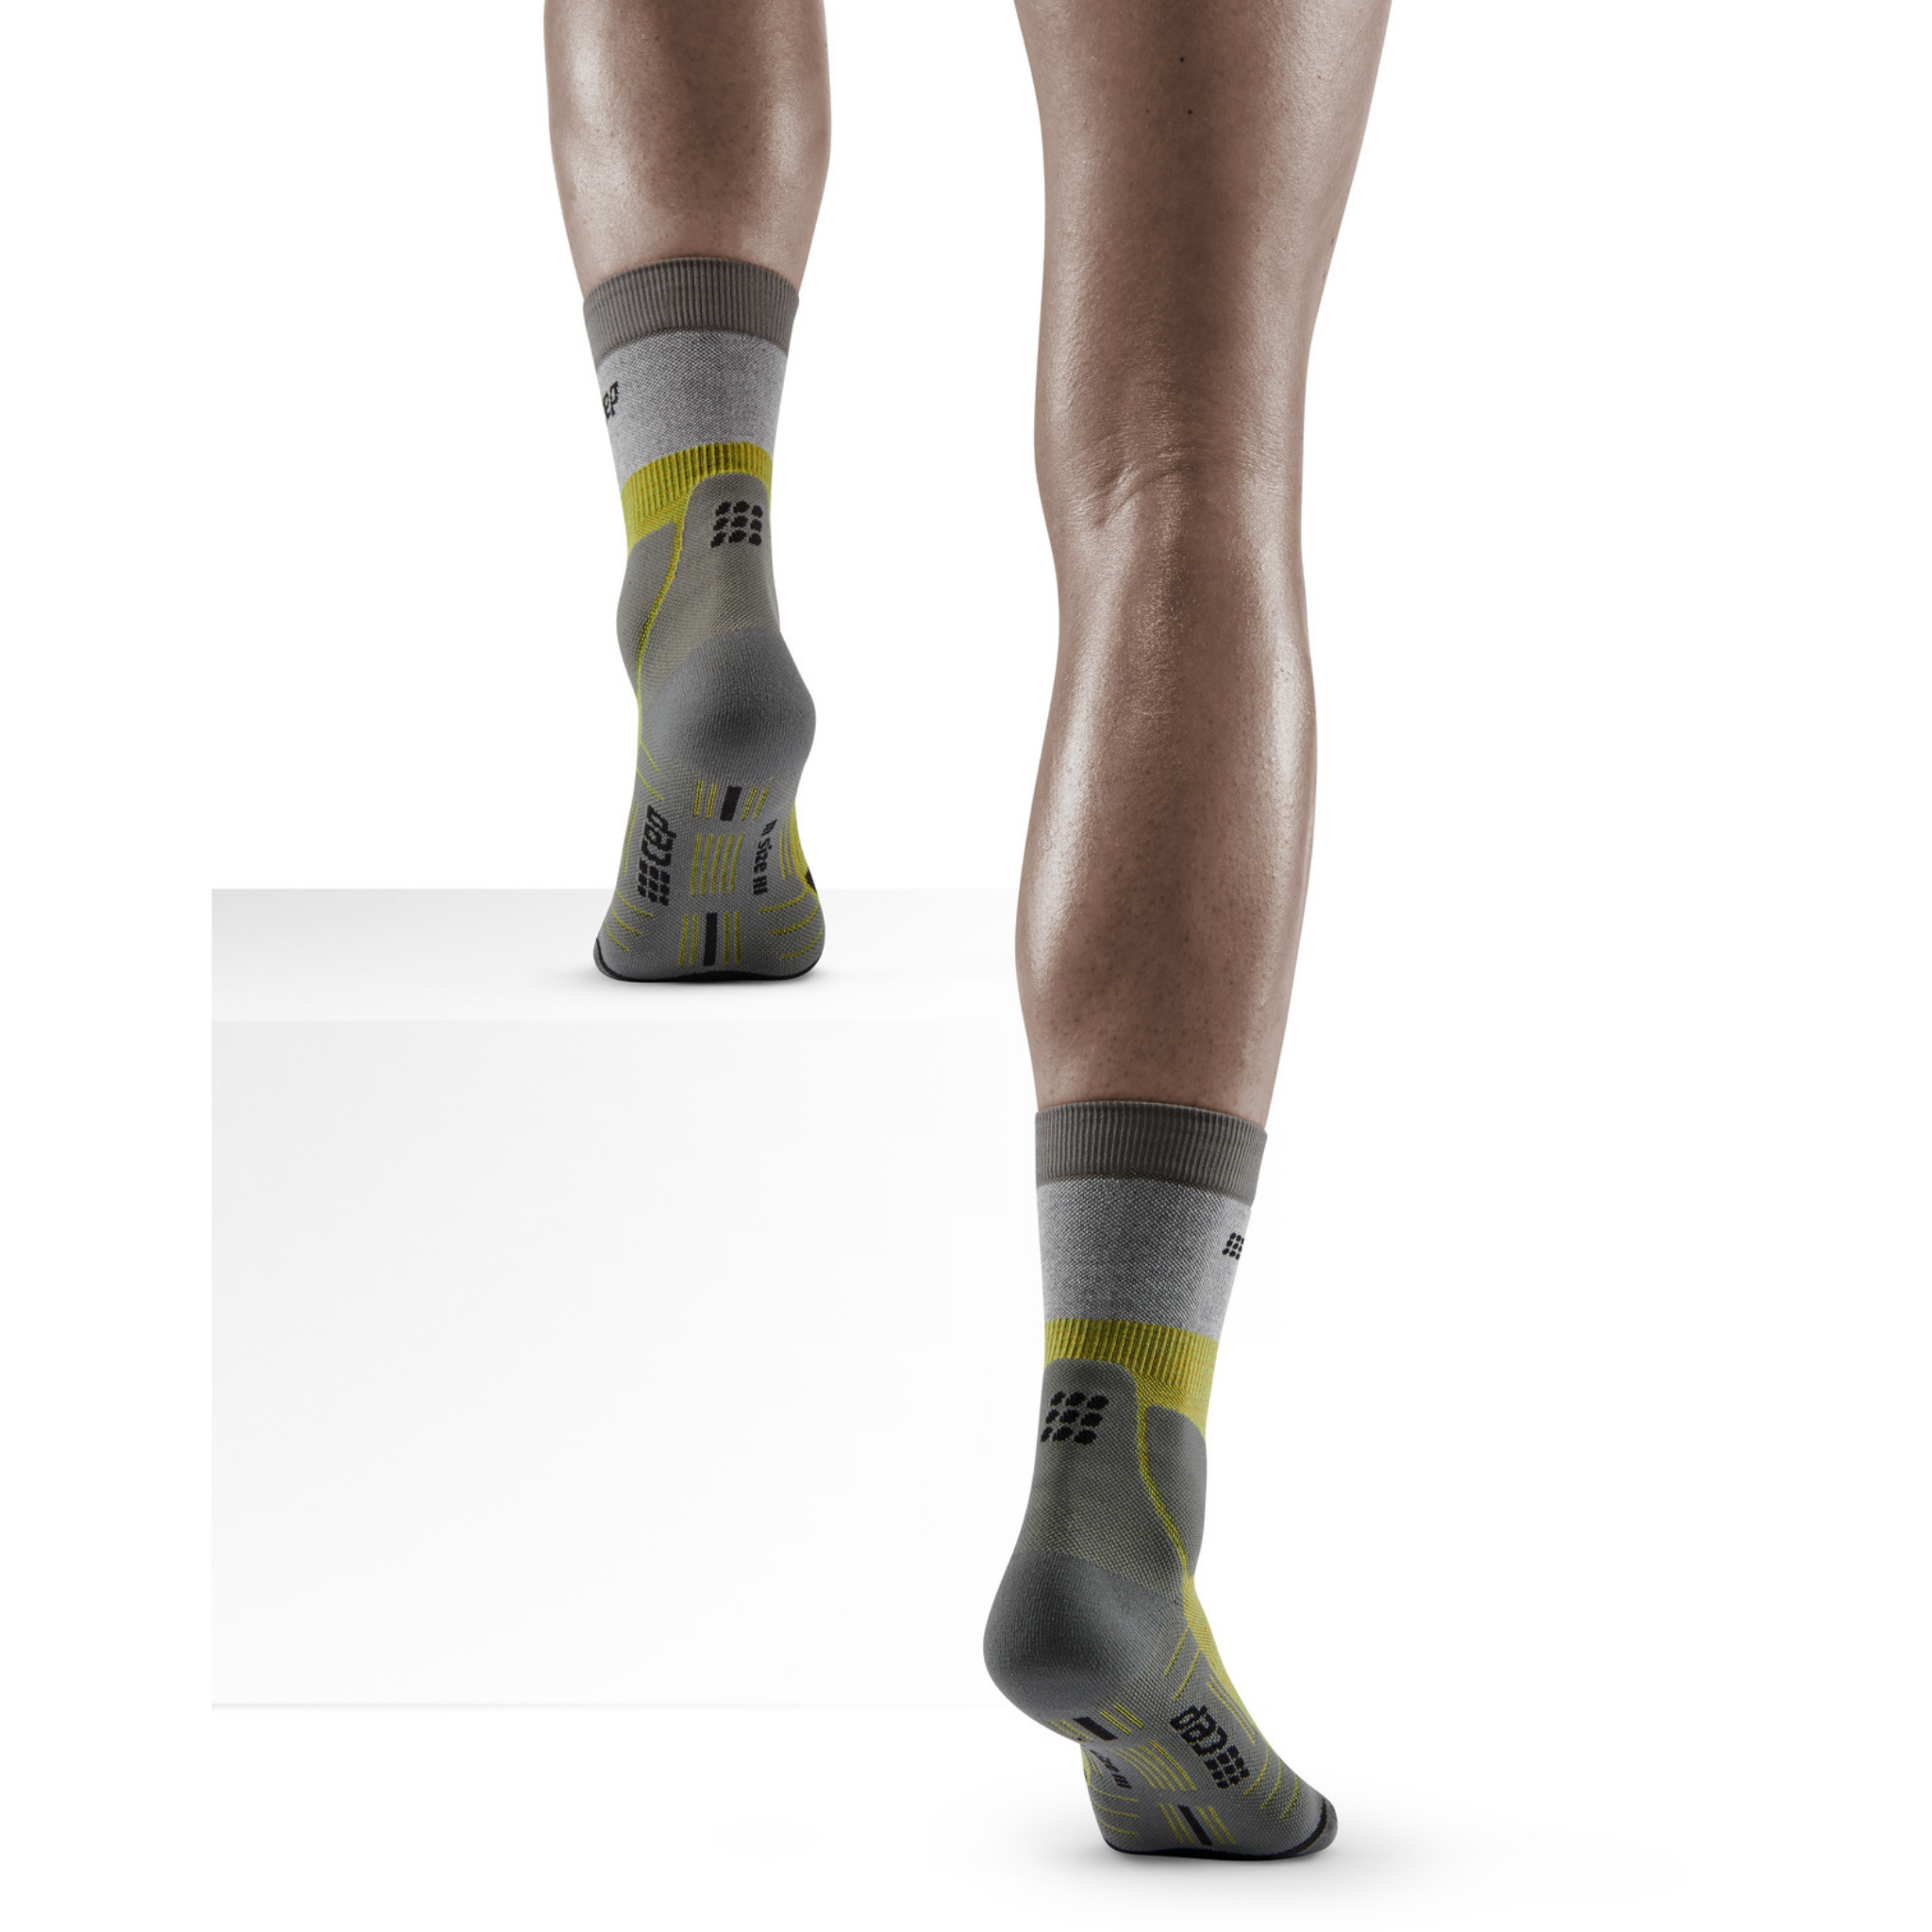 The Run Low Cut Socks 4.0 for Men